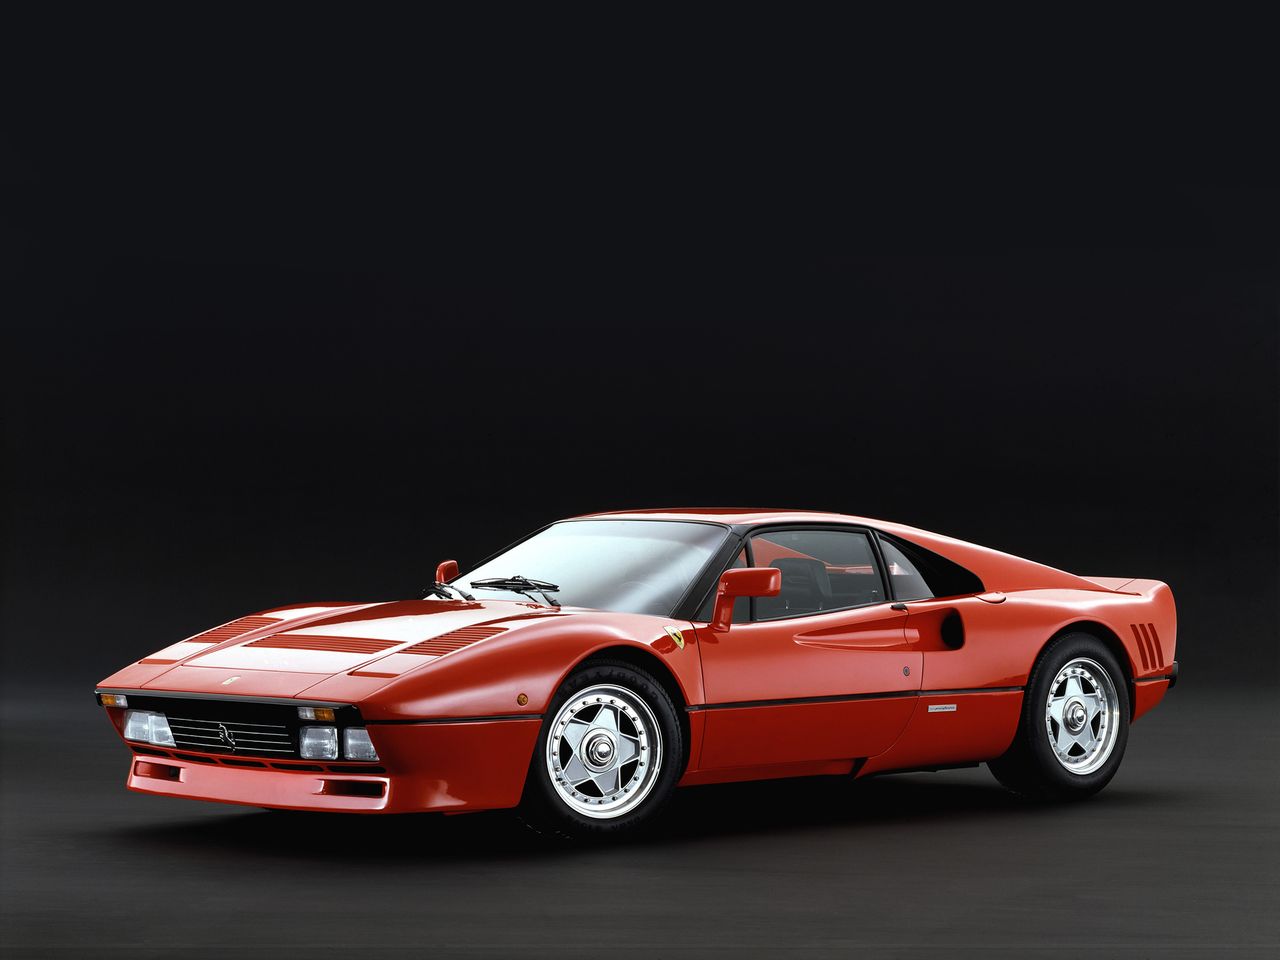 Tutaj wyjątkowo cofamy się w czasie znacznie dalej niż kilka lat. Ferrari 288 GTO produkowane było w latach 1984-1987. AMG A 45 dzieli więc od tej maszyny około 30 lat. W swoim czasie był to flagowy okręt Ferrari. 288 GTO to poprzednik takich maszyn jak F40, Enzo i LaFerrari. Trzeba było 3 dekad, żeby kompaktowy hot hatch dysponował lepszymi osiągami niż topowy wóz egzotycznej marki z Maranello. 288 GTO rozwijało 400 KM i osiągało 100 km/h w 4,8 s.